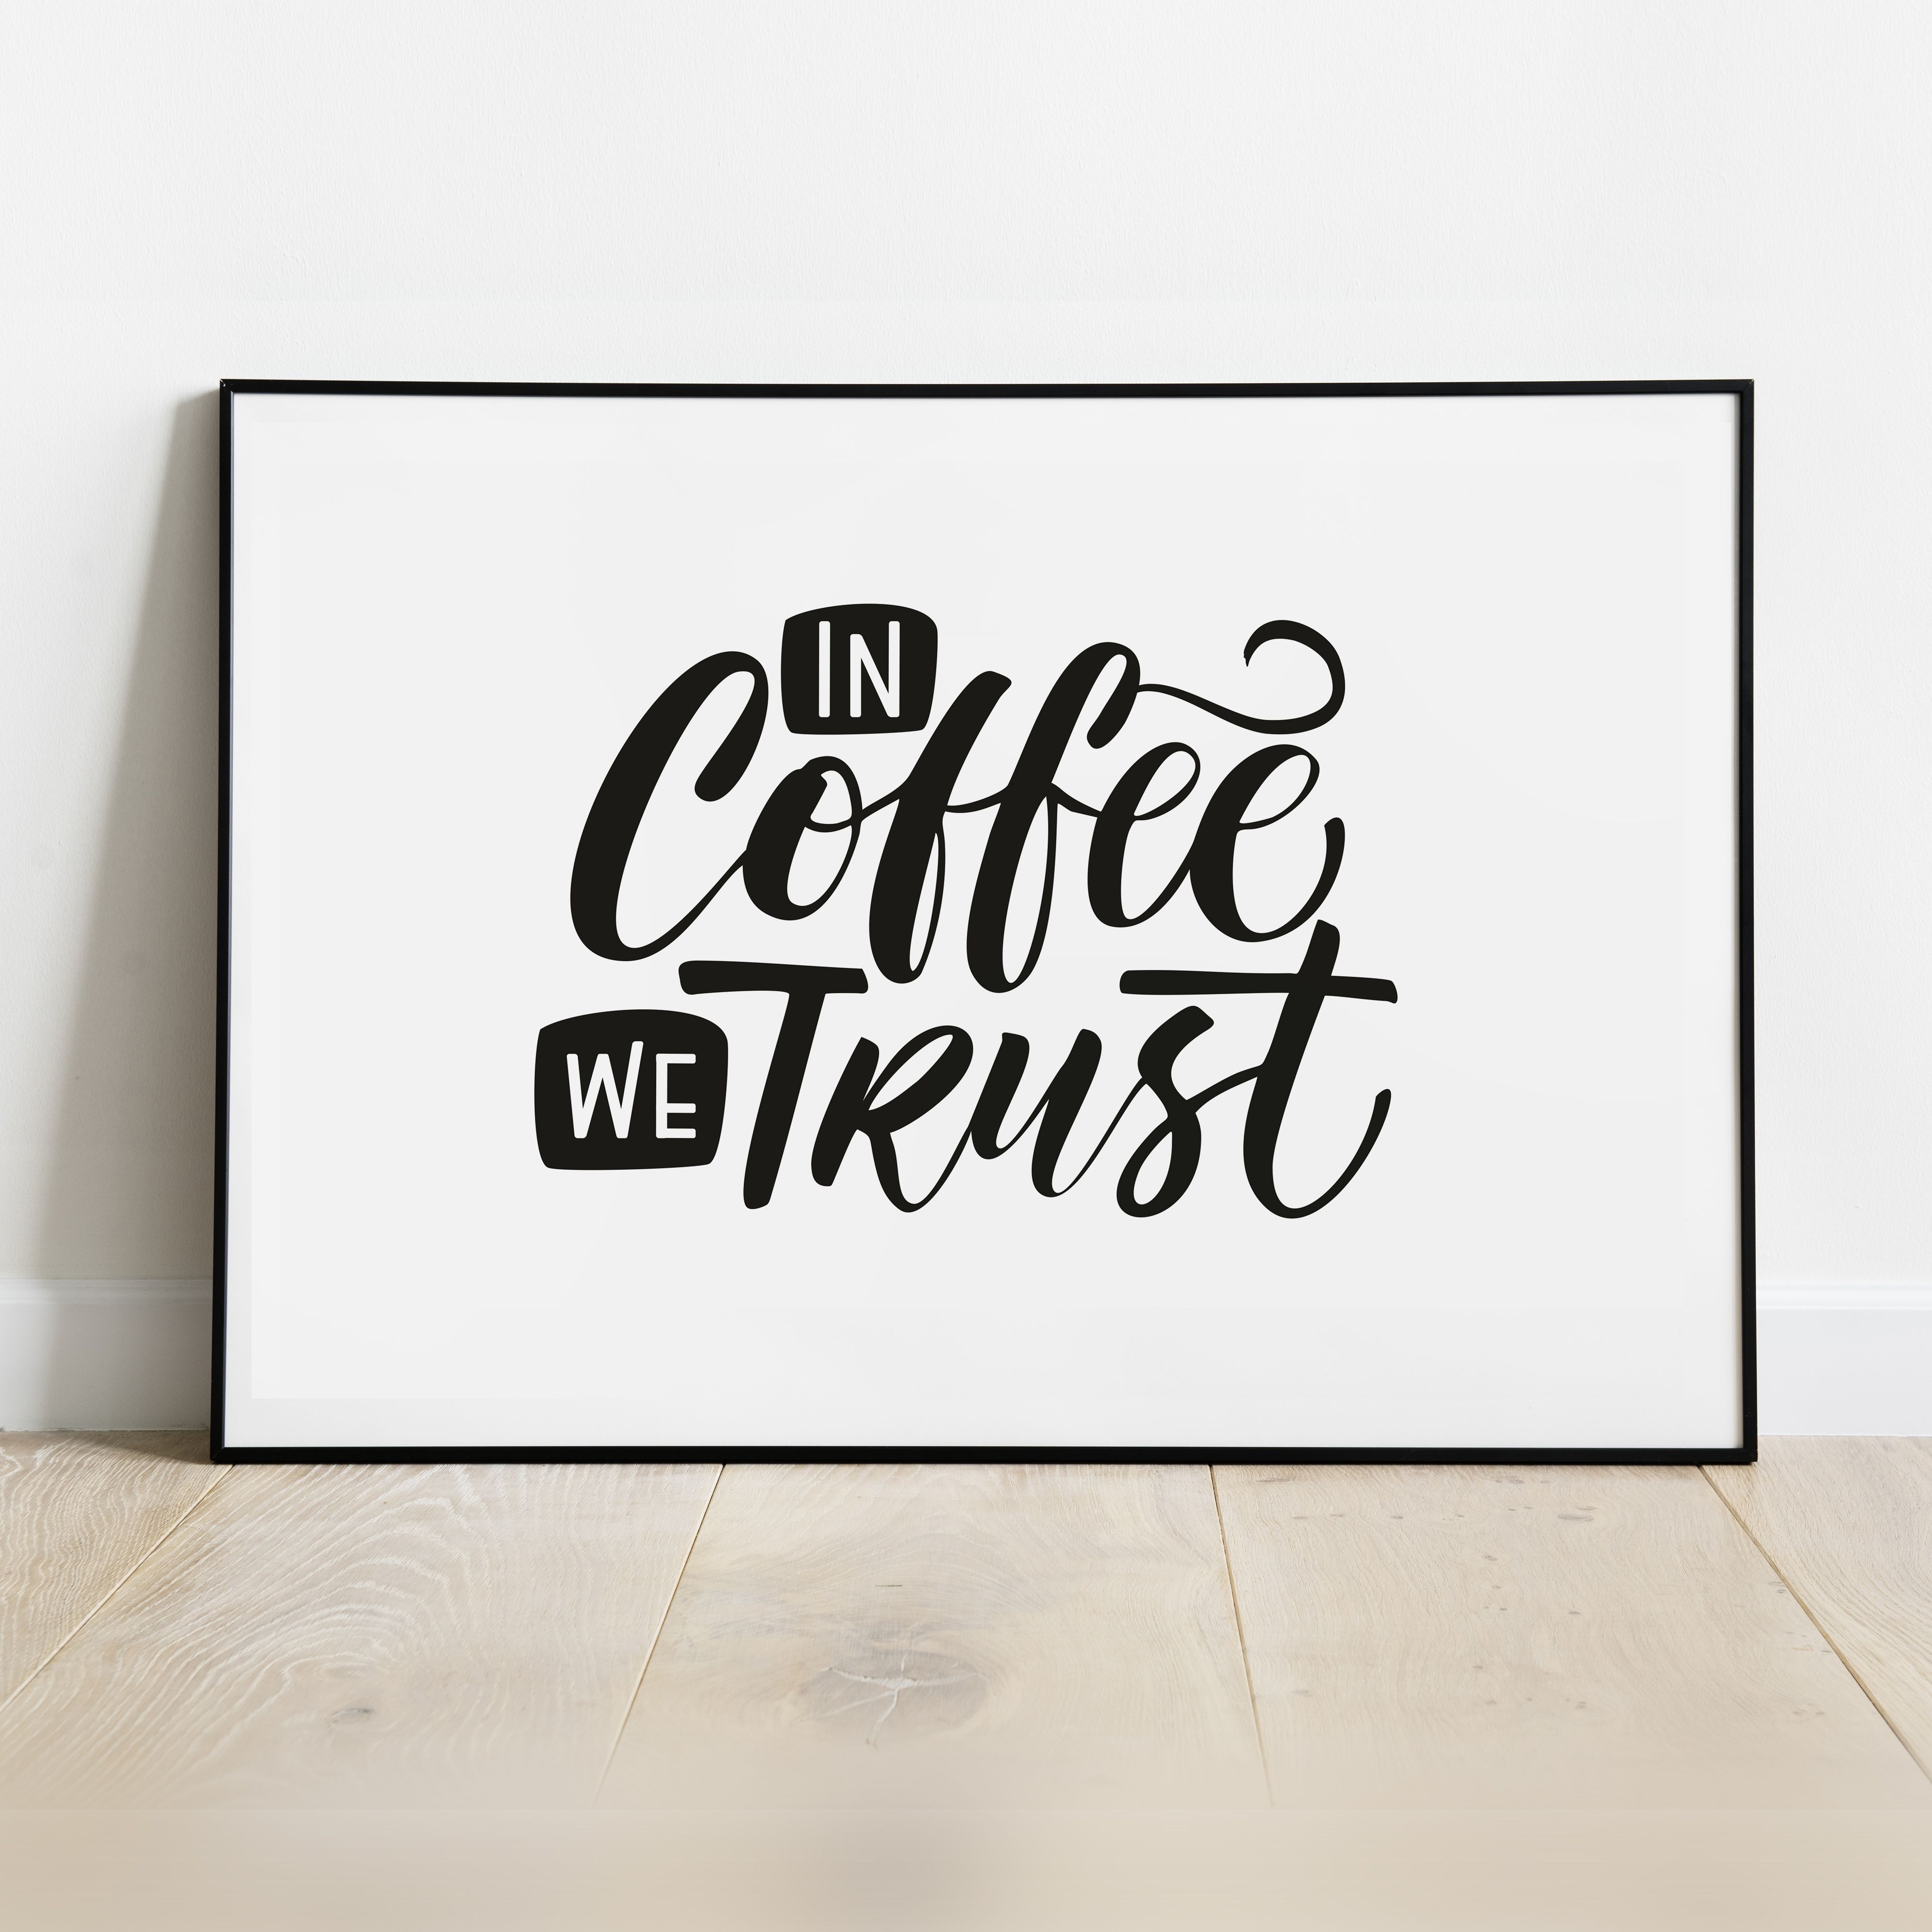 Постер "In coffee we trust"